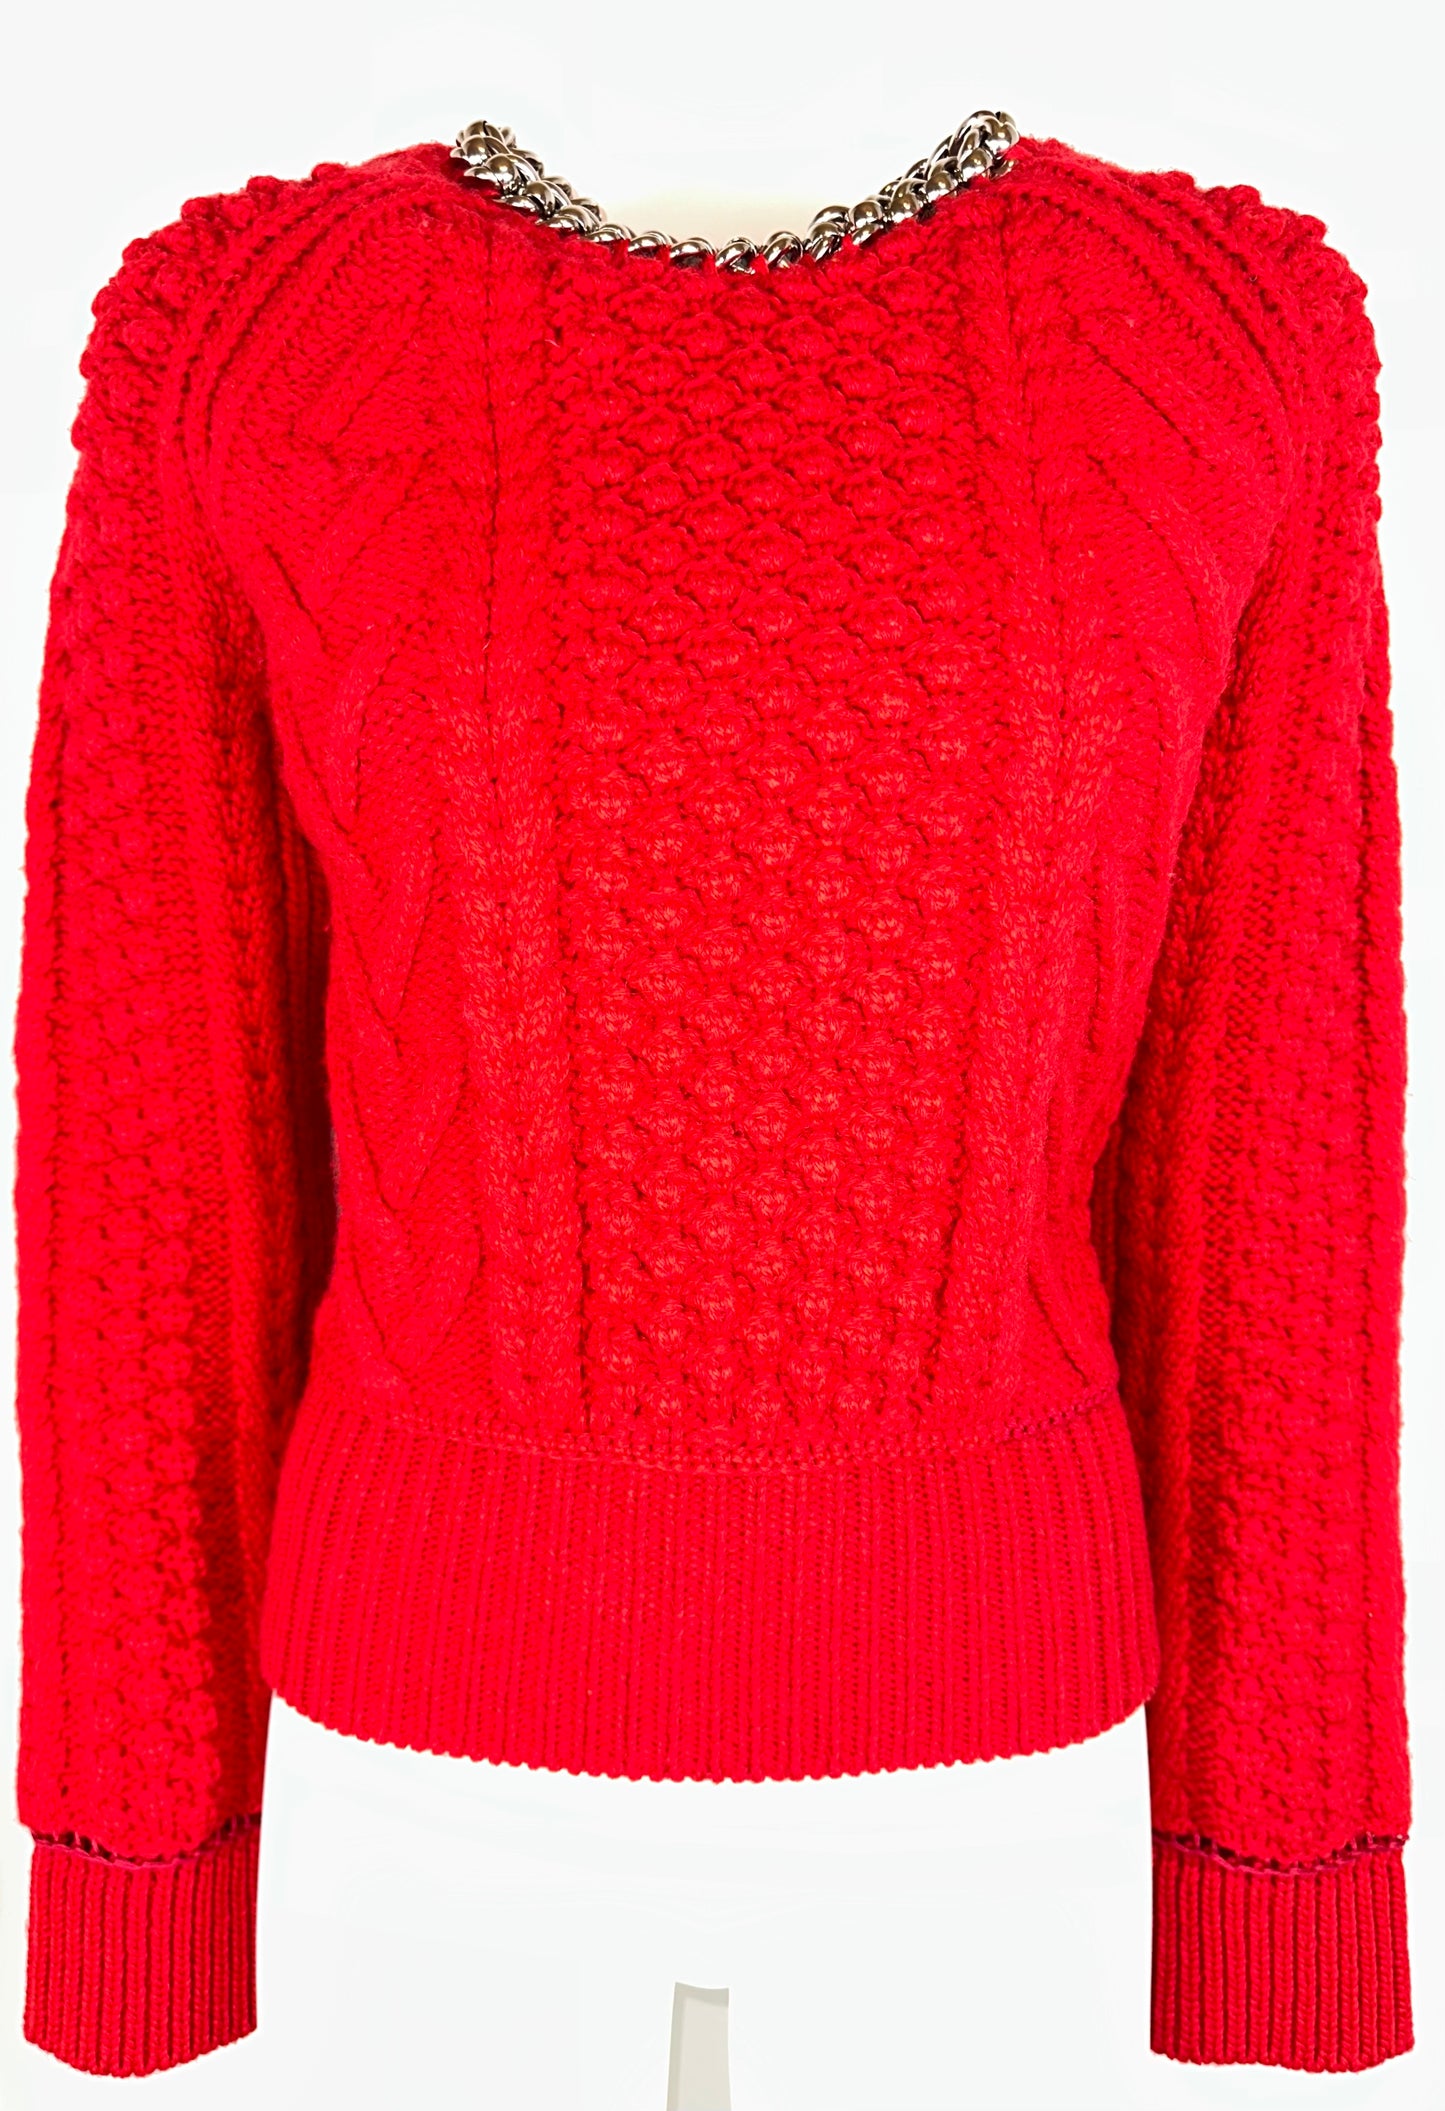 BOTTEGA VENETA - Pullover red open back chain details size S